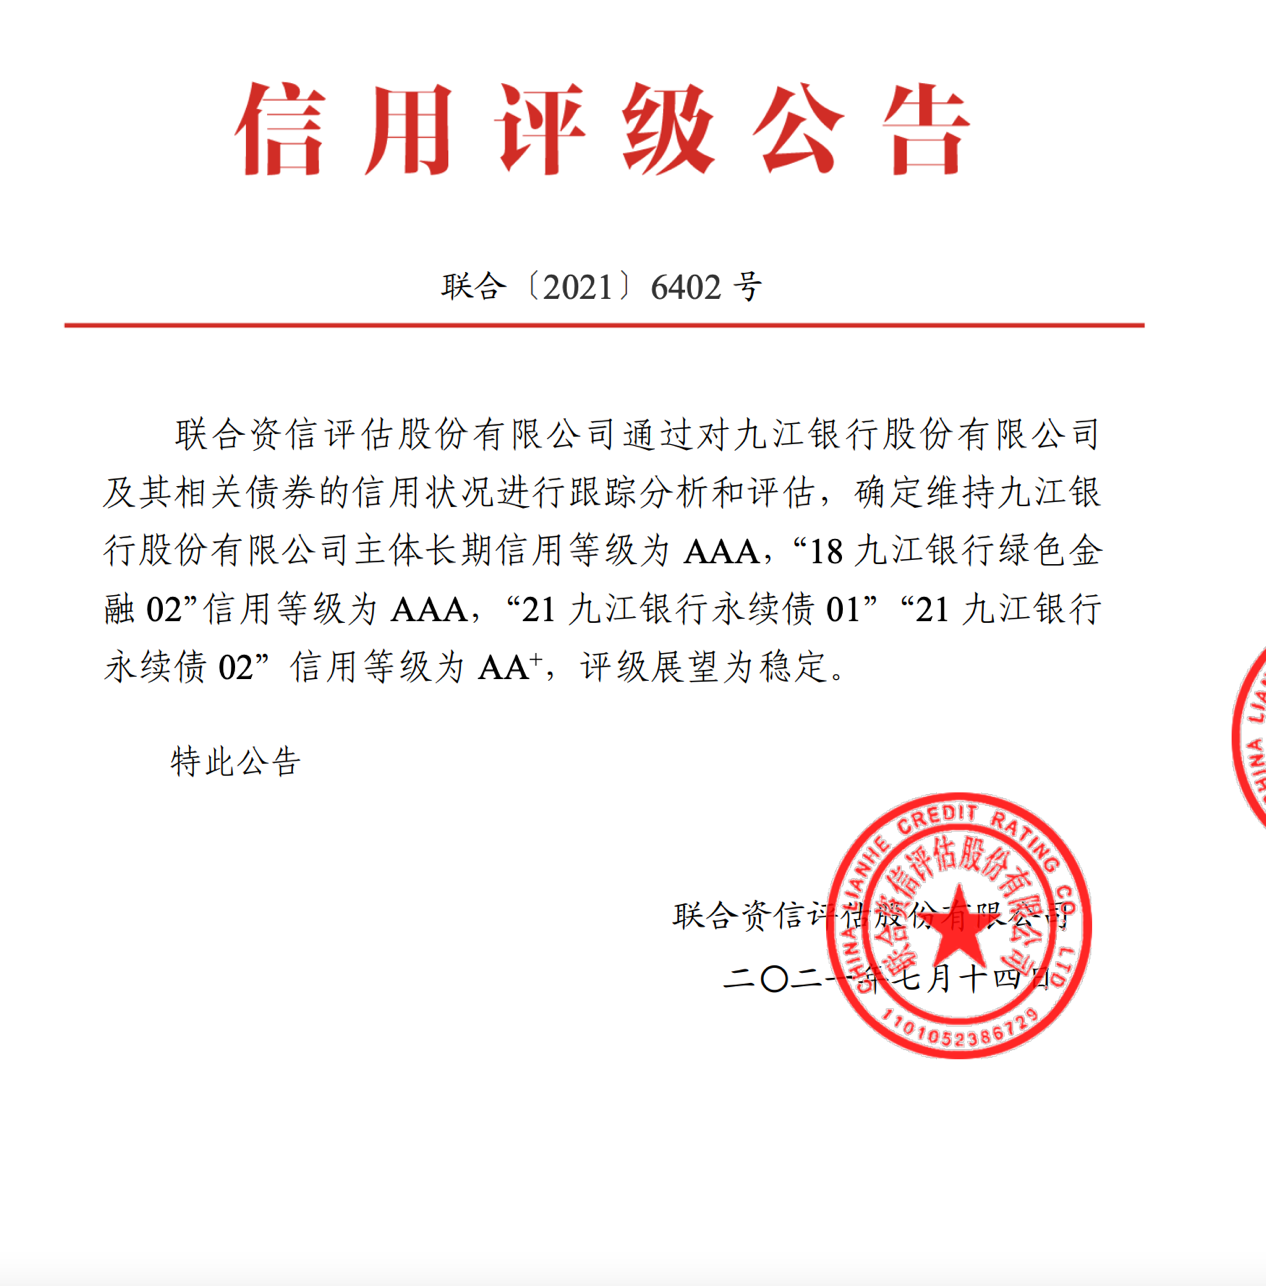 自2019年以来九江银行主体信用连续三年被评为AAA级